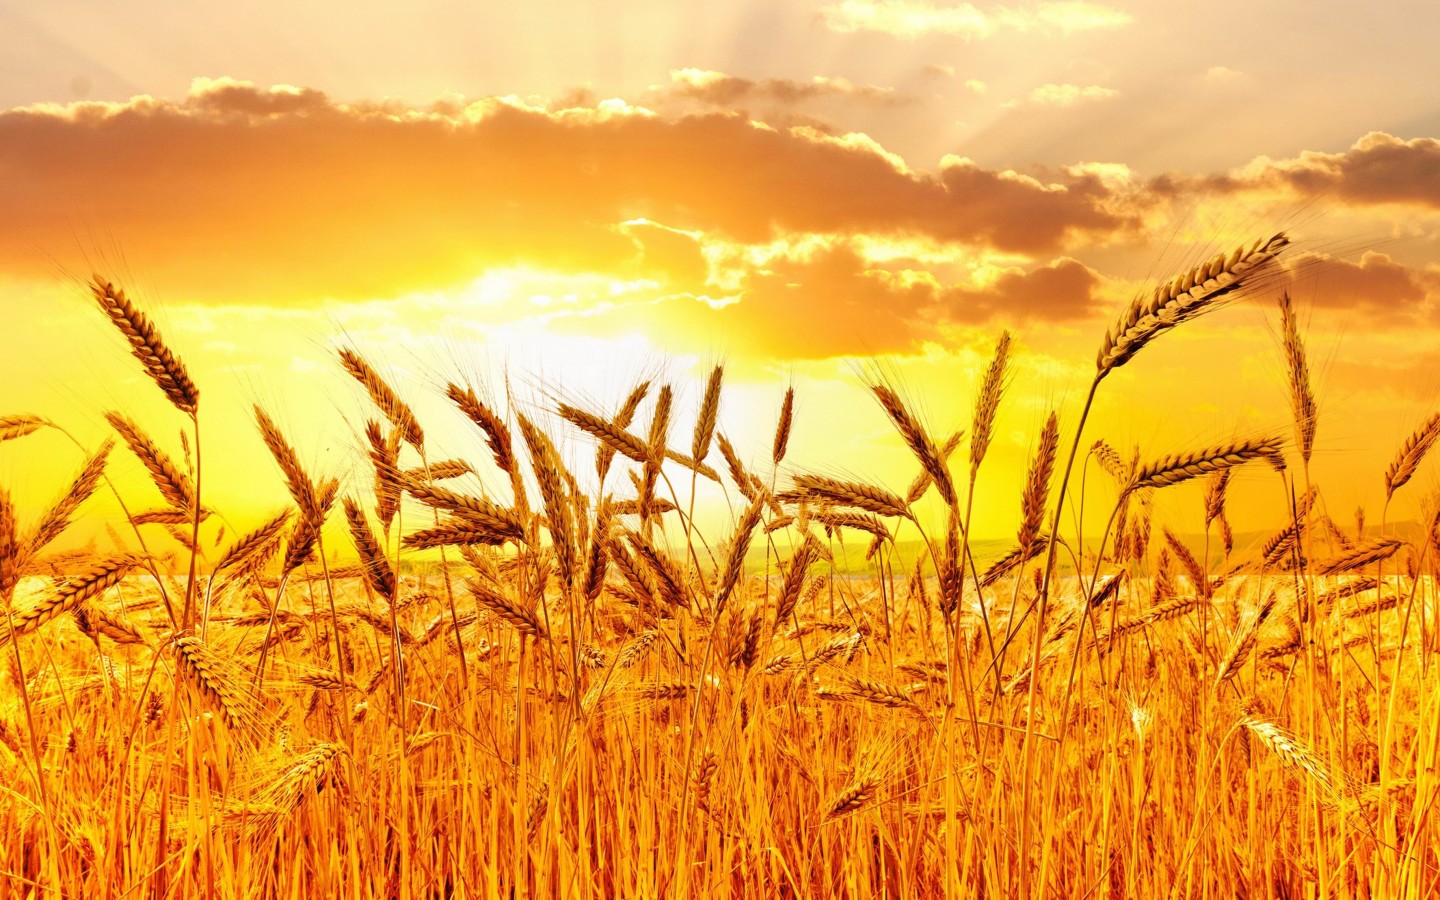 Golden Wheat Field At Sunset Wallpaper for Desktop 1440x900